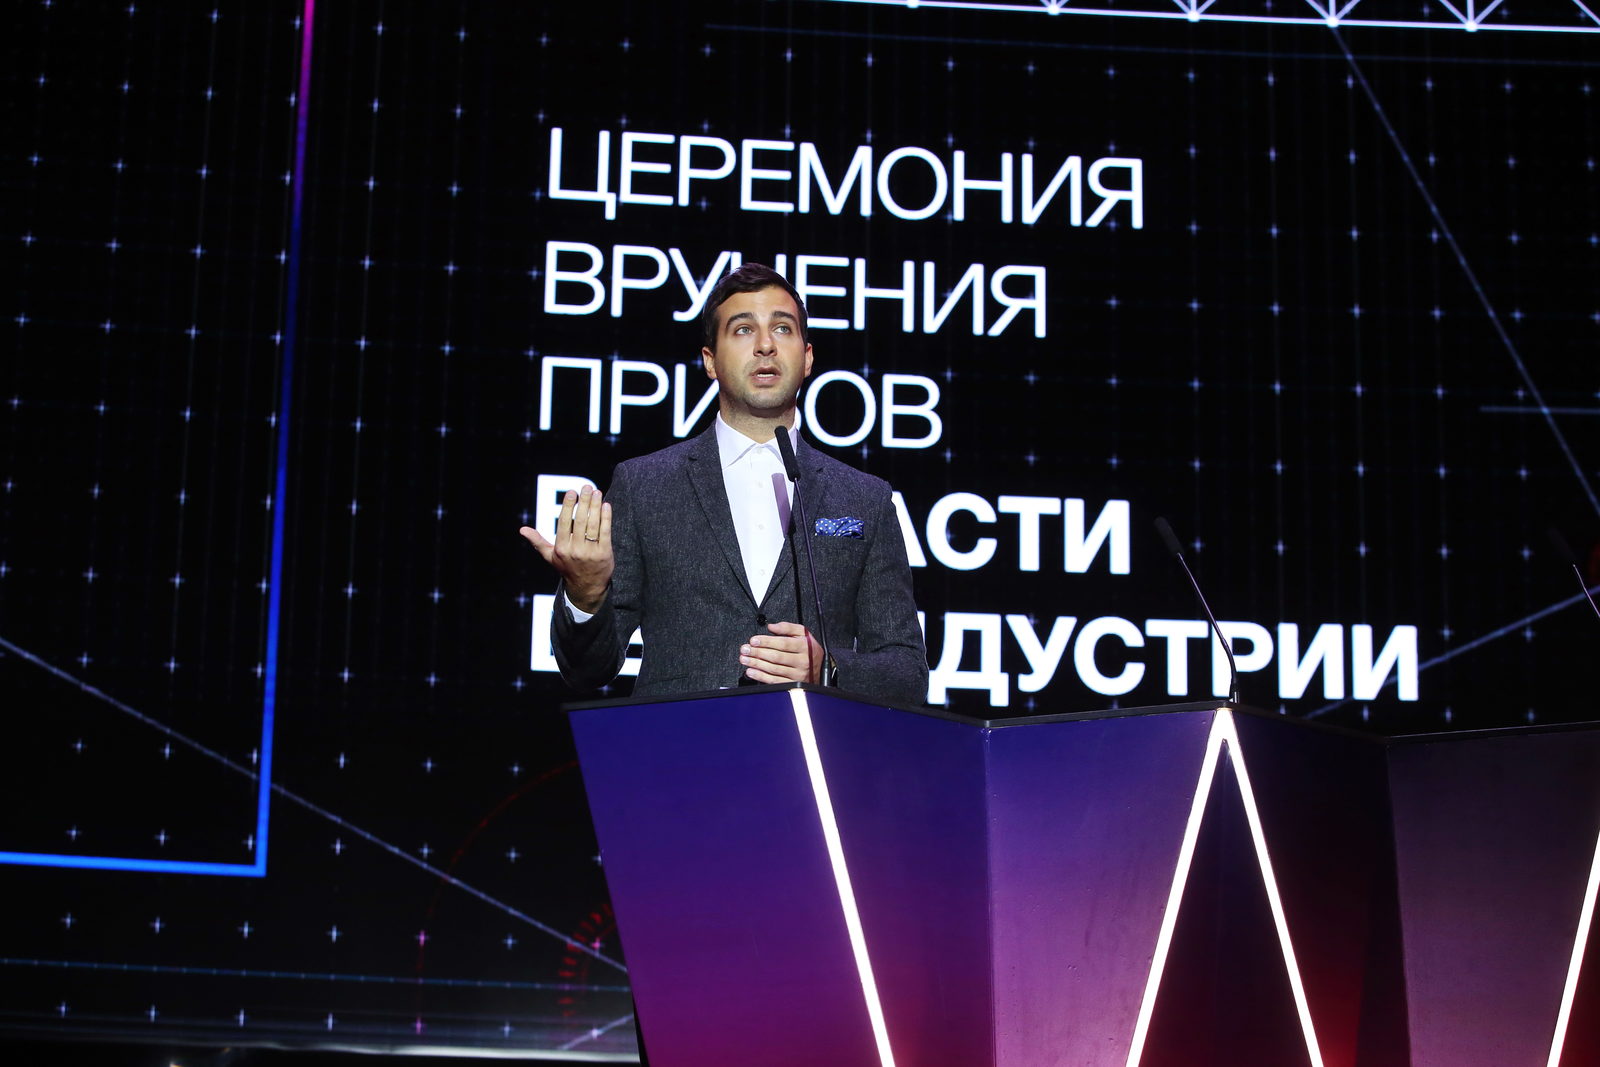 Объявлен прием заявок на российскую премию в области веб-индустрии